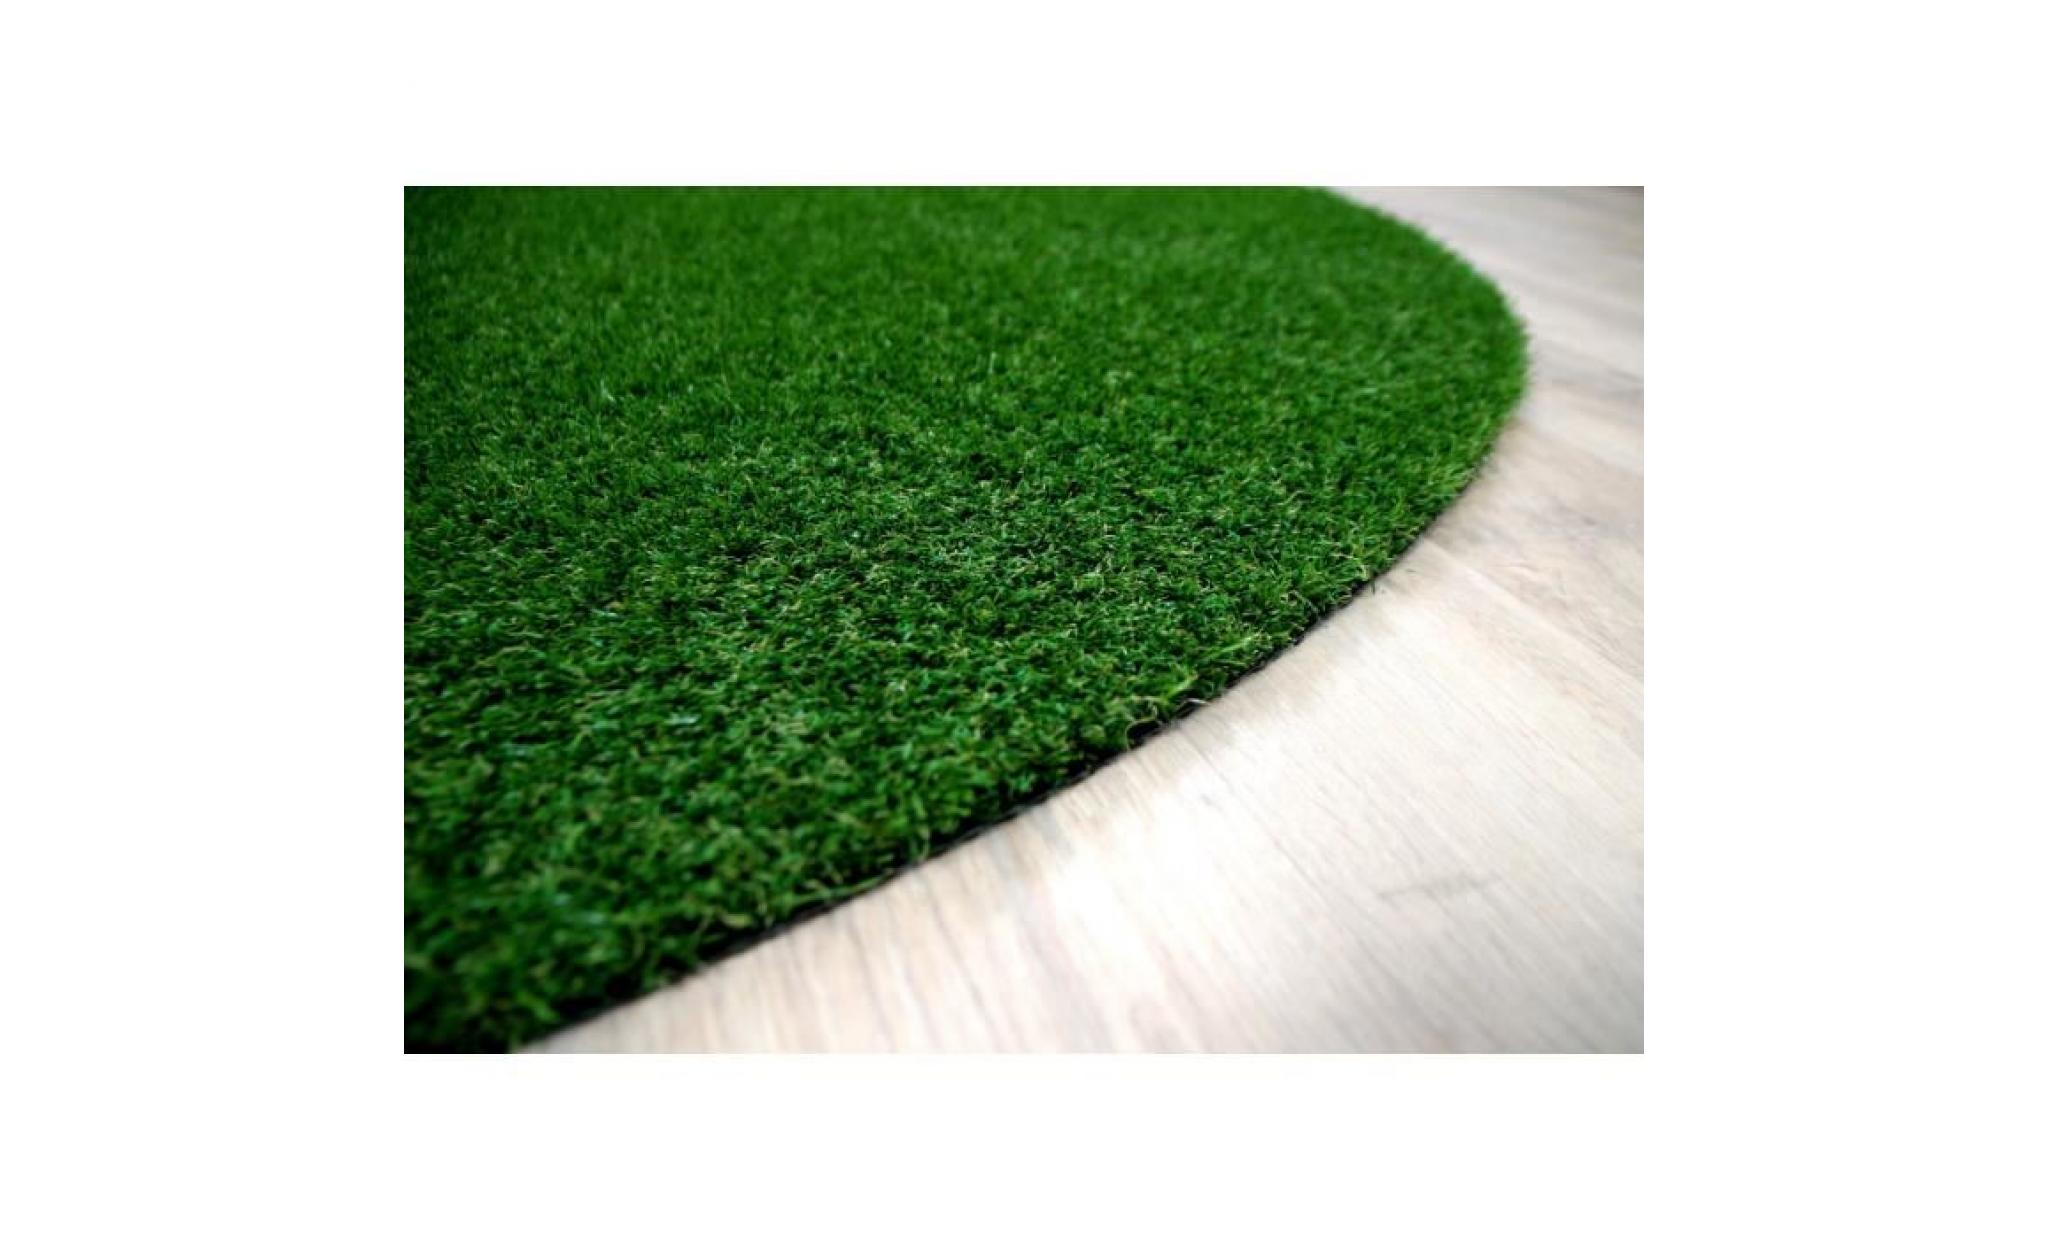 chelsea   tapis type luxe gazon artificiel rond – pour jardin, terrasse, balcon   vert   [200 cm rond] pas cher